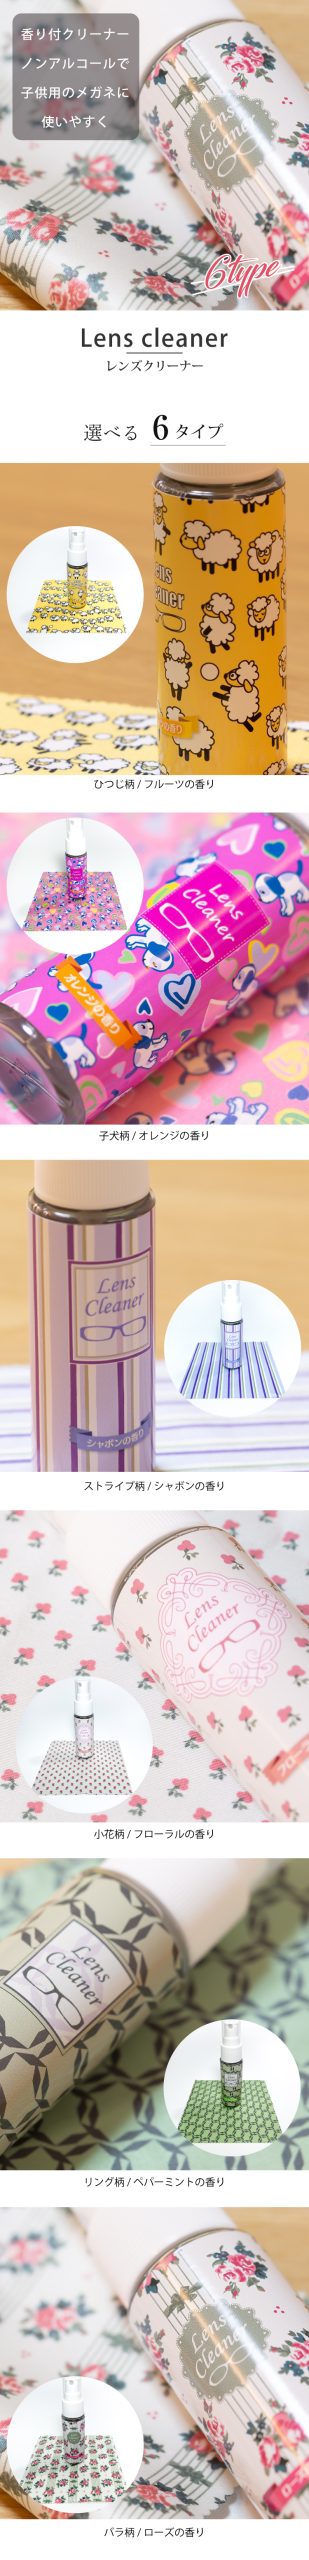 香り付きレンズクリーナー 30ml メガネ拭き セット 6種類の柄